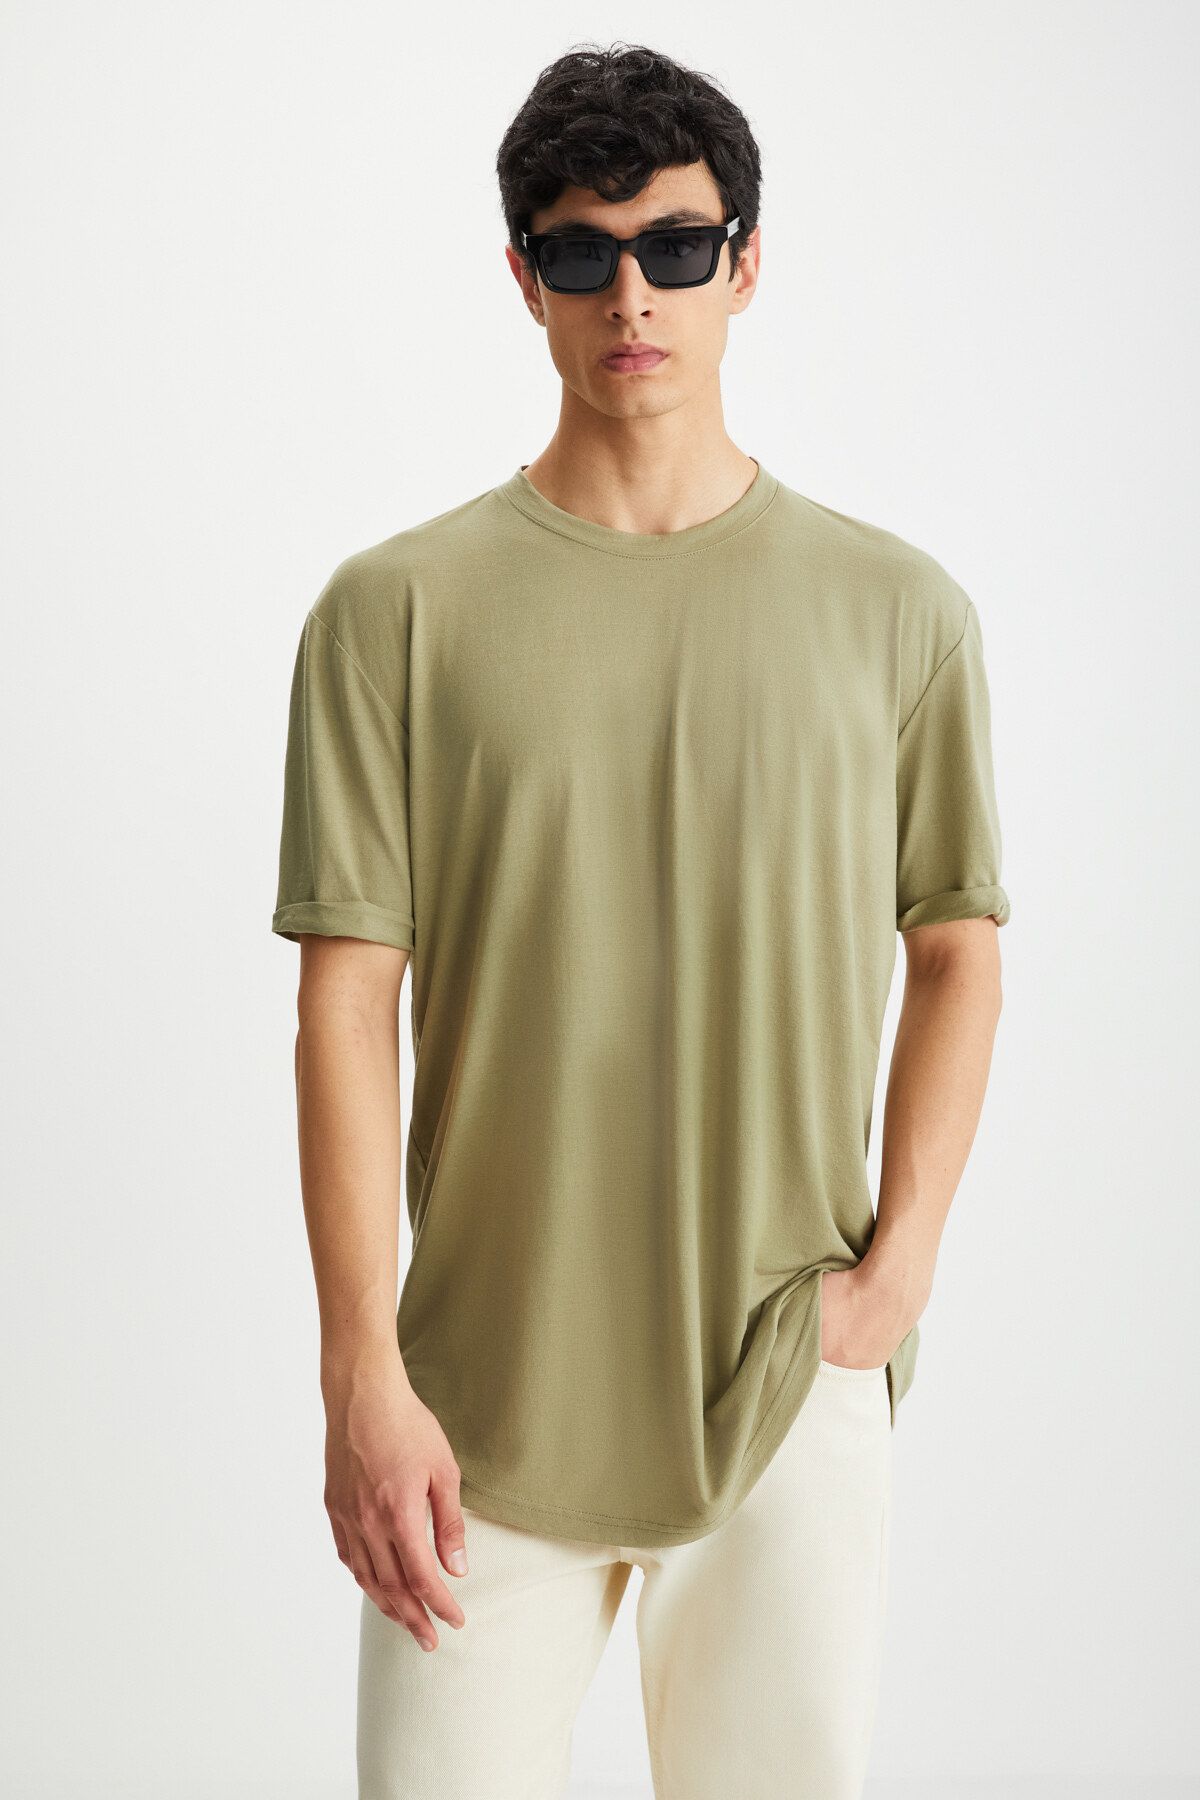 GRIMELANGE Oscar Erkek Uzun Fit Dökümlü Kumaşlı Haki T-shirt